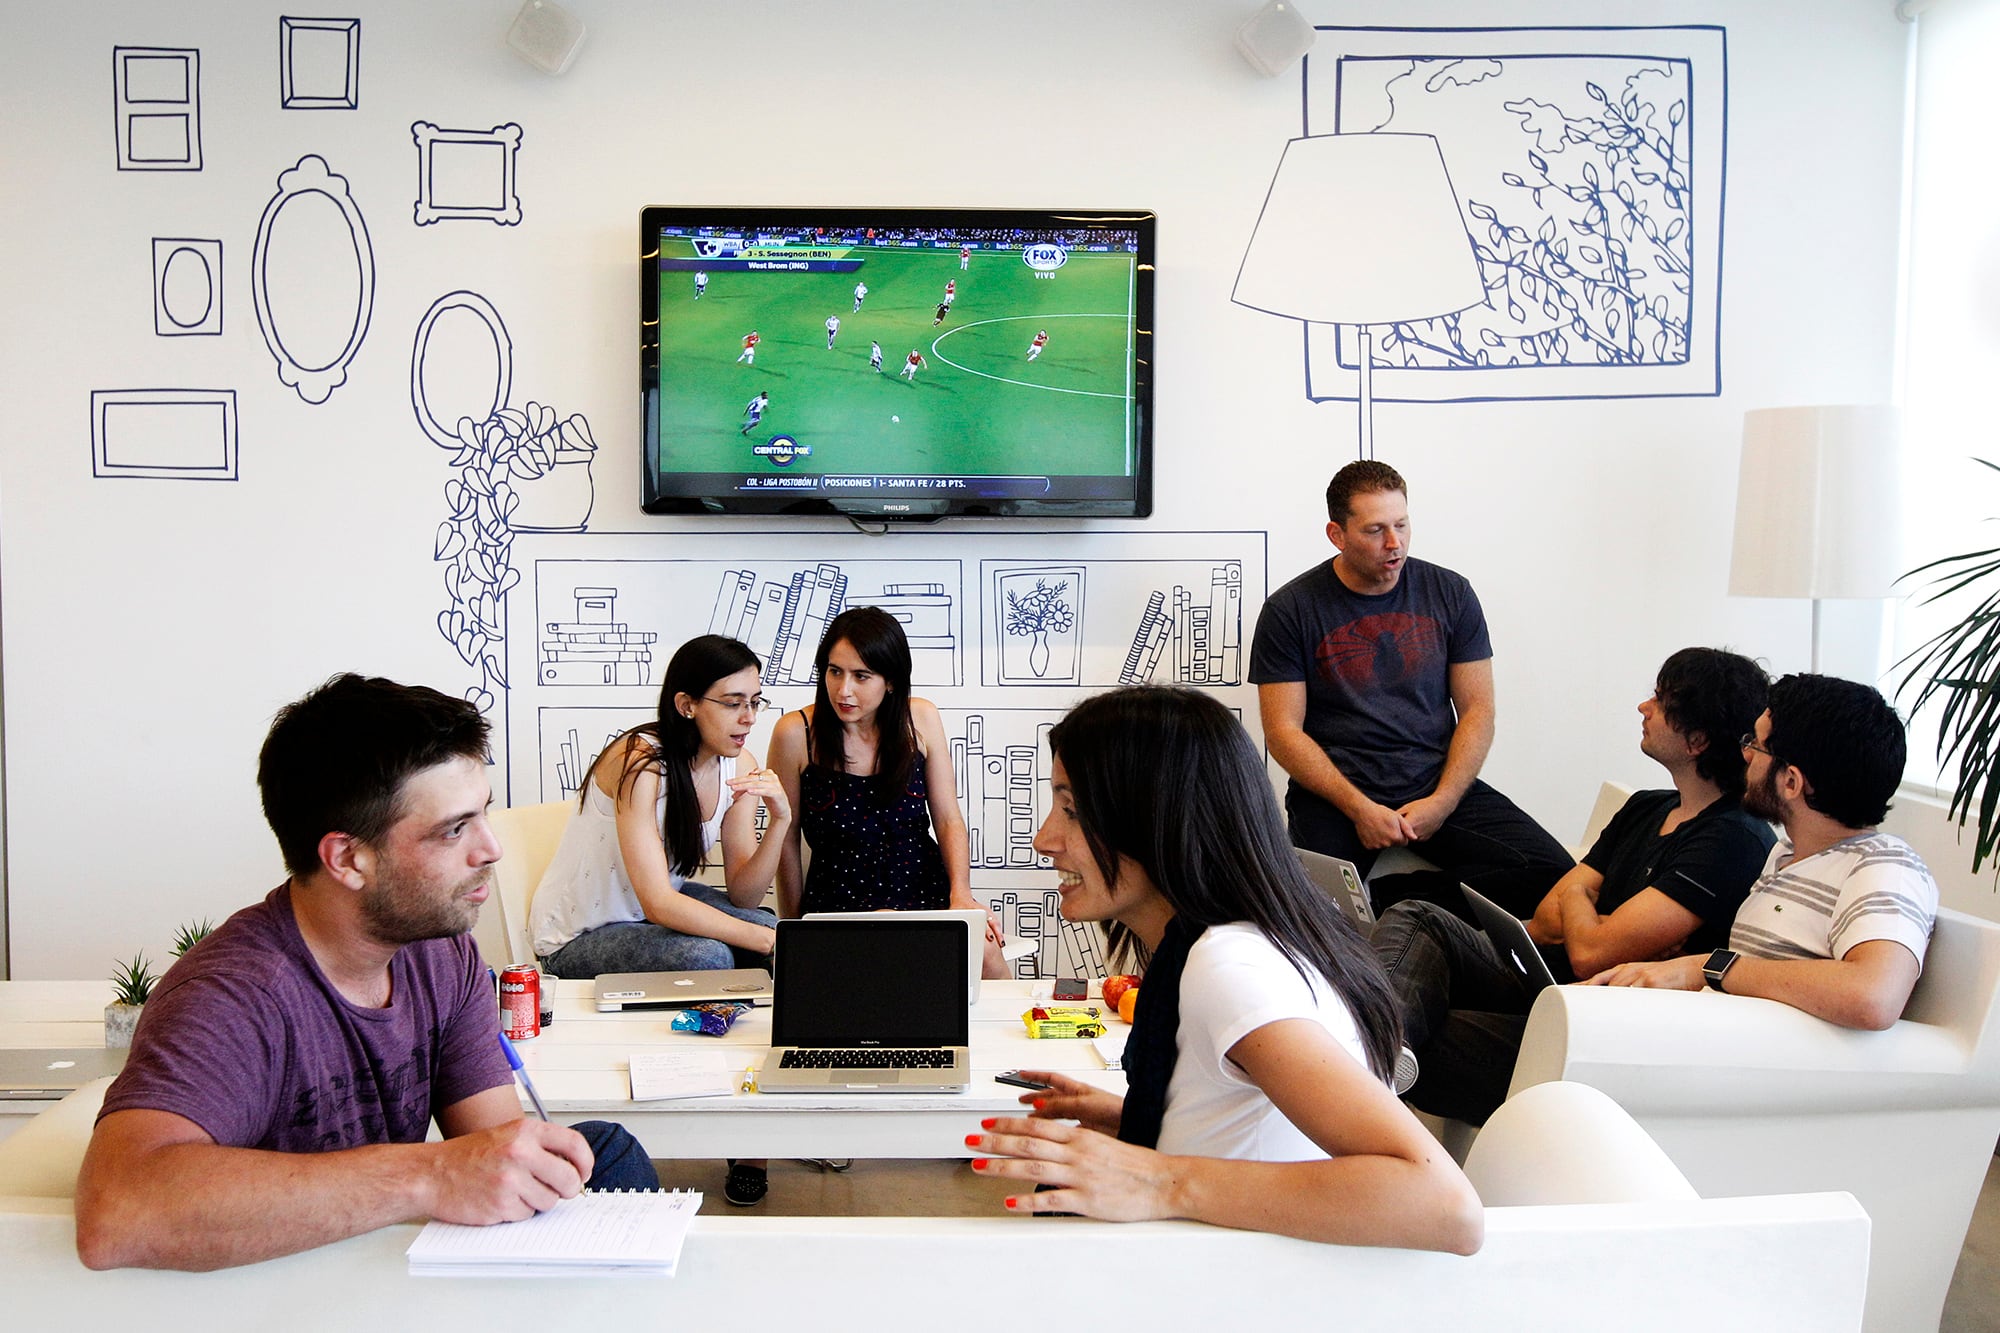 Oficinas: el desafío de crear espacios de trabajo saludables y productivos que motiven la presencialidad